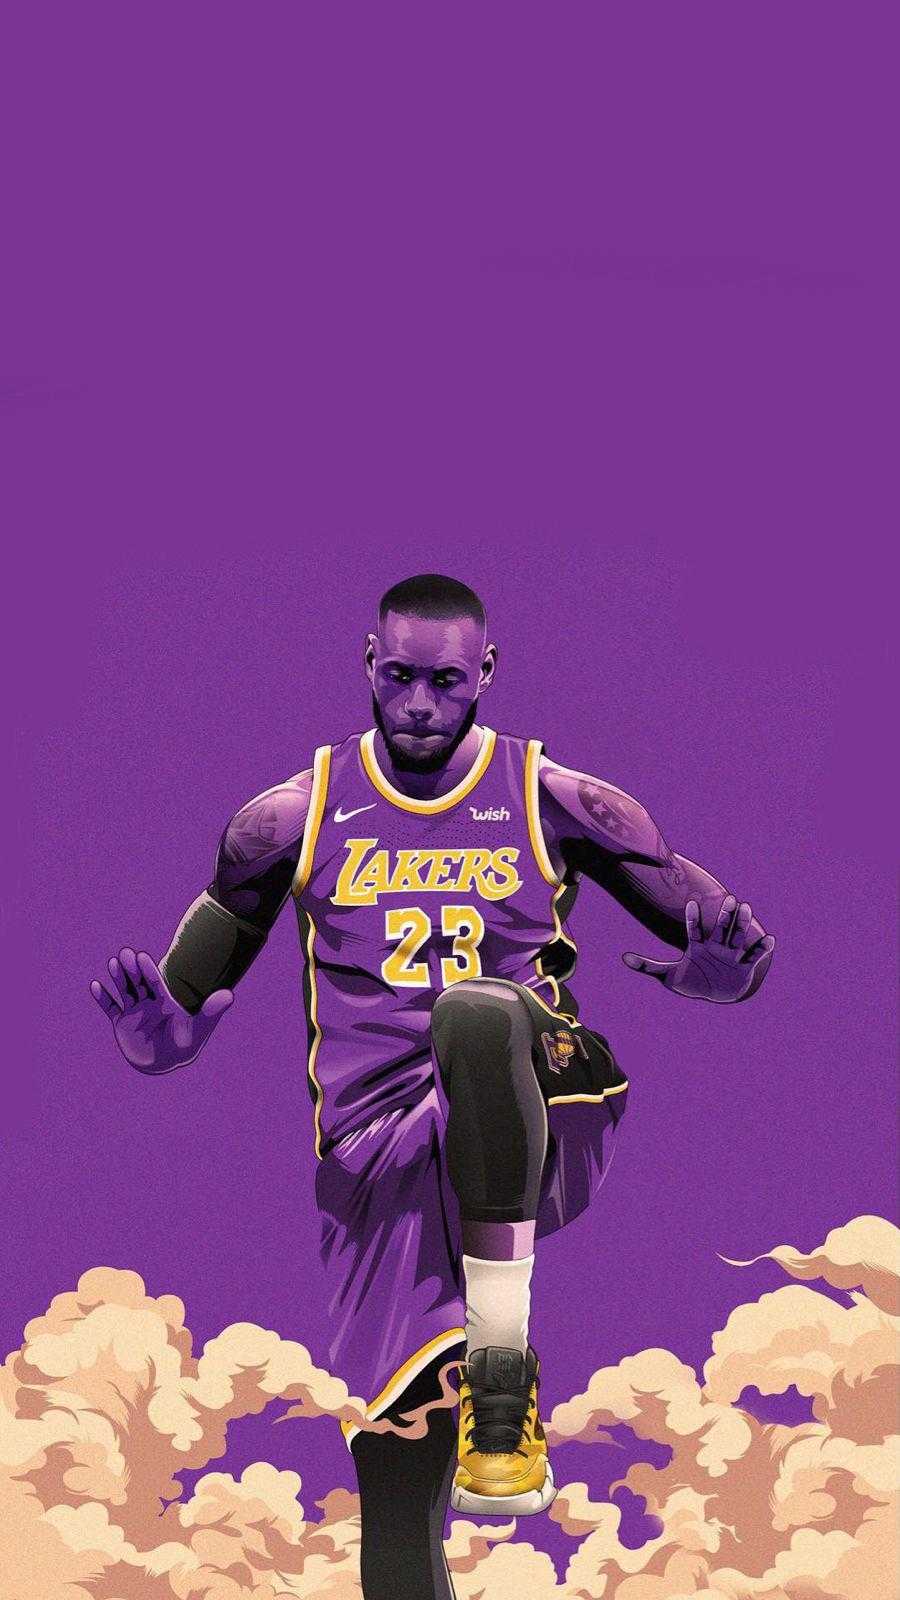 38+] Los Angeles Lakers Wallpapers - WallpaperSafari